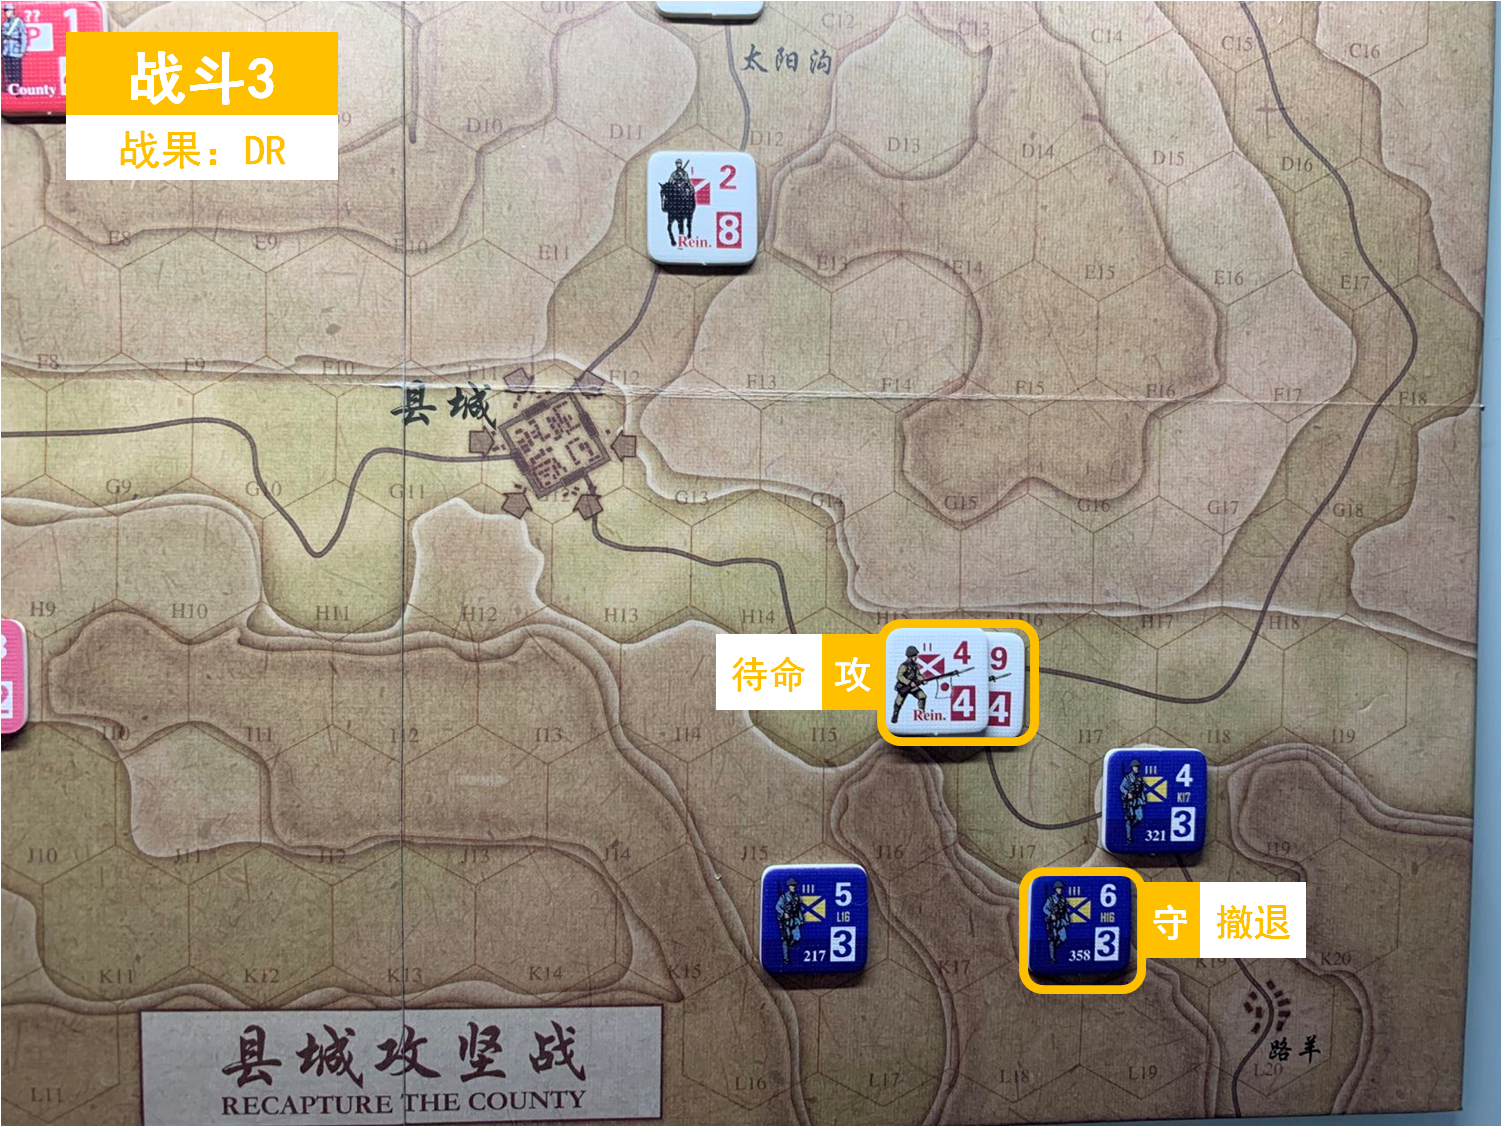 第三回合 日方战斗阶段 战斗3 战斗结果